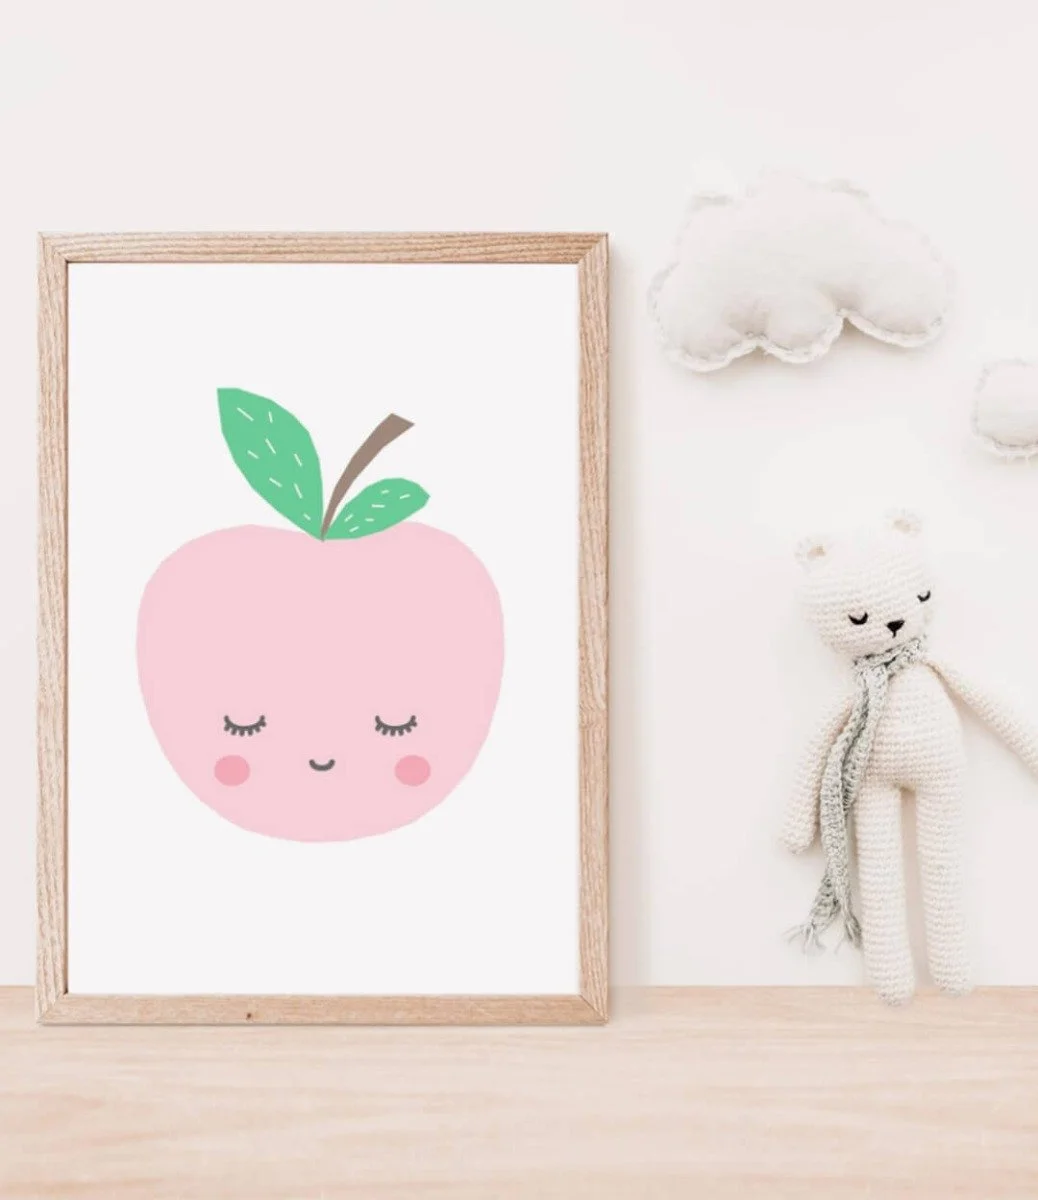 Sleepy Pink Apple Wall Art Print by Sweet Pea